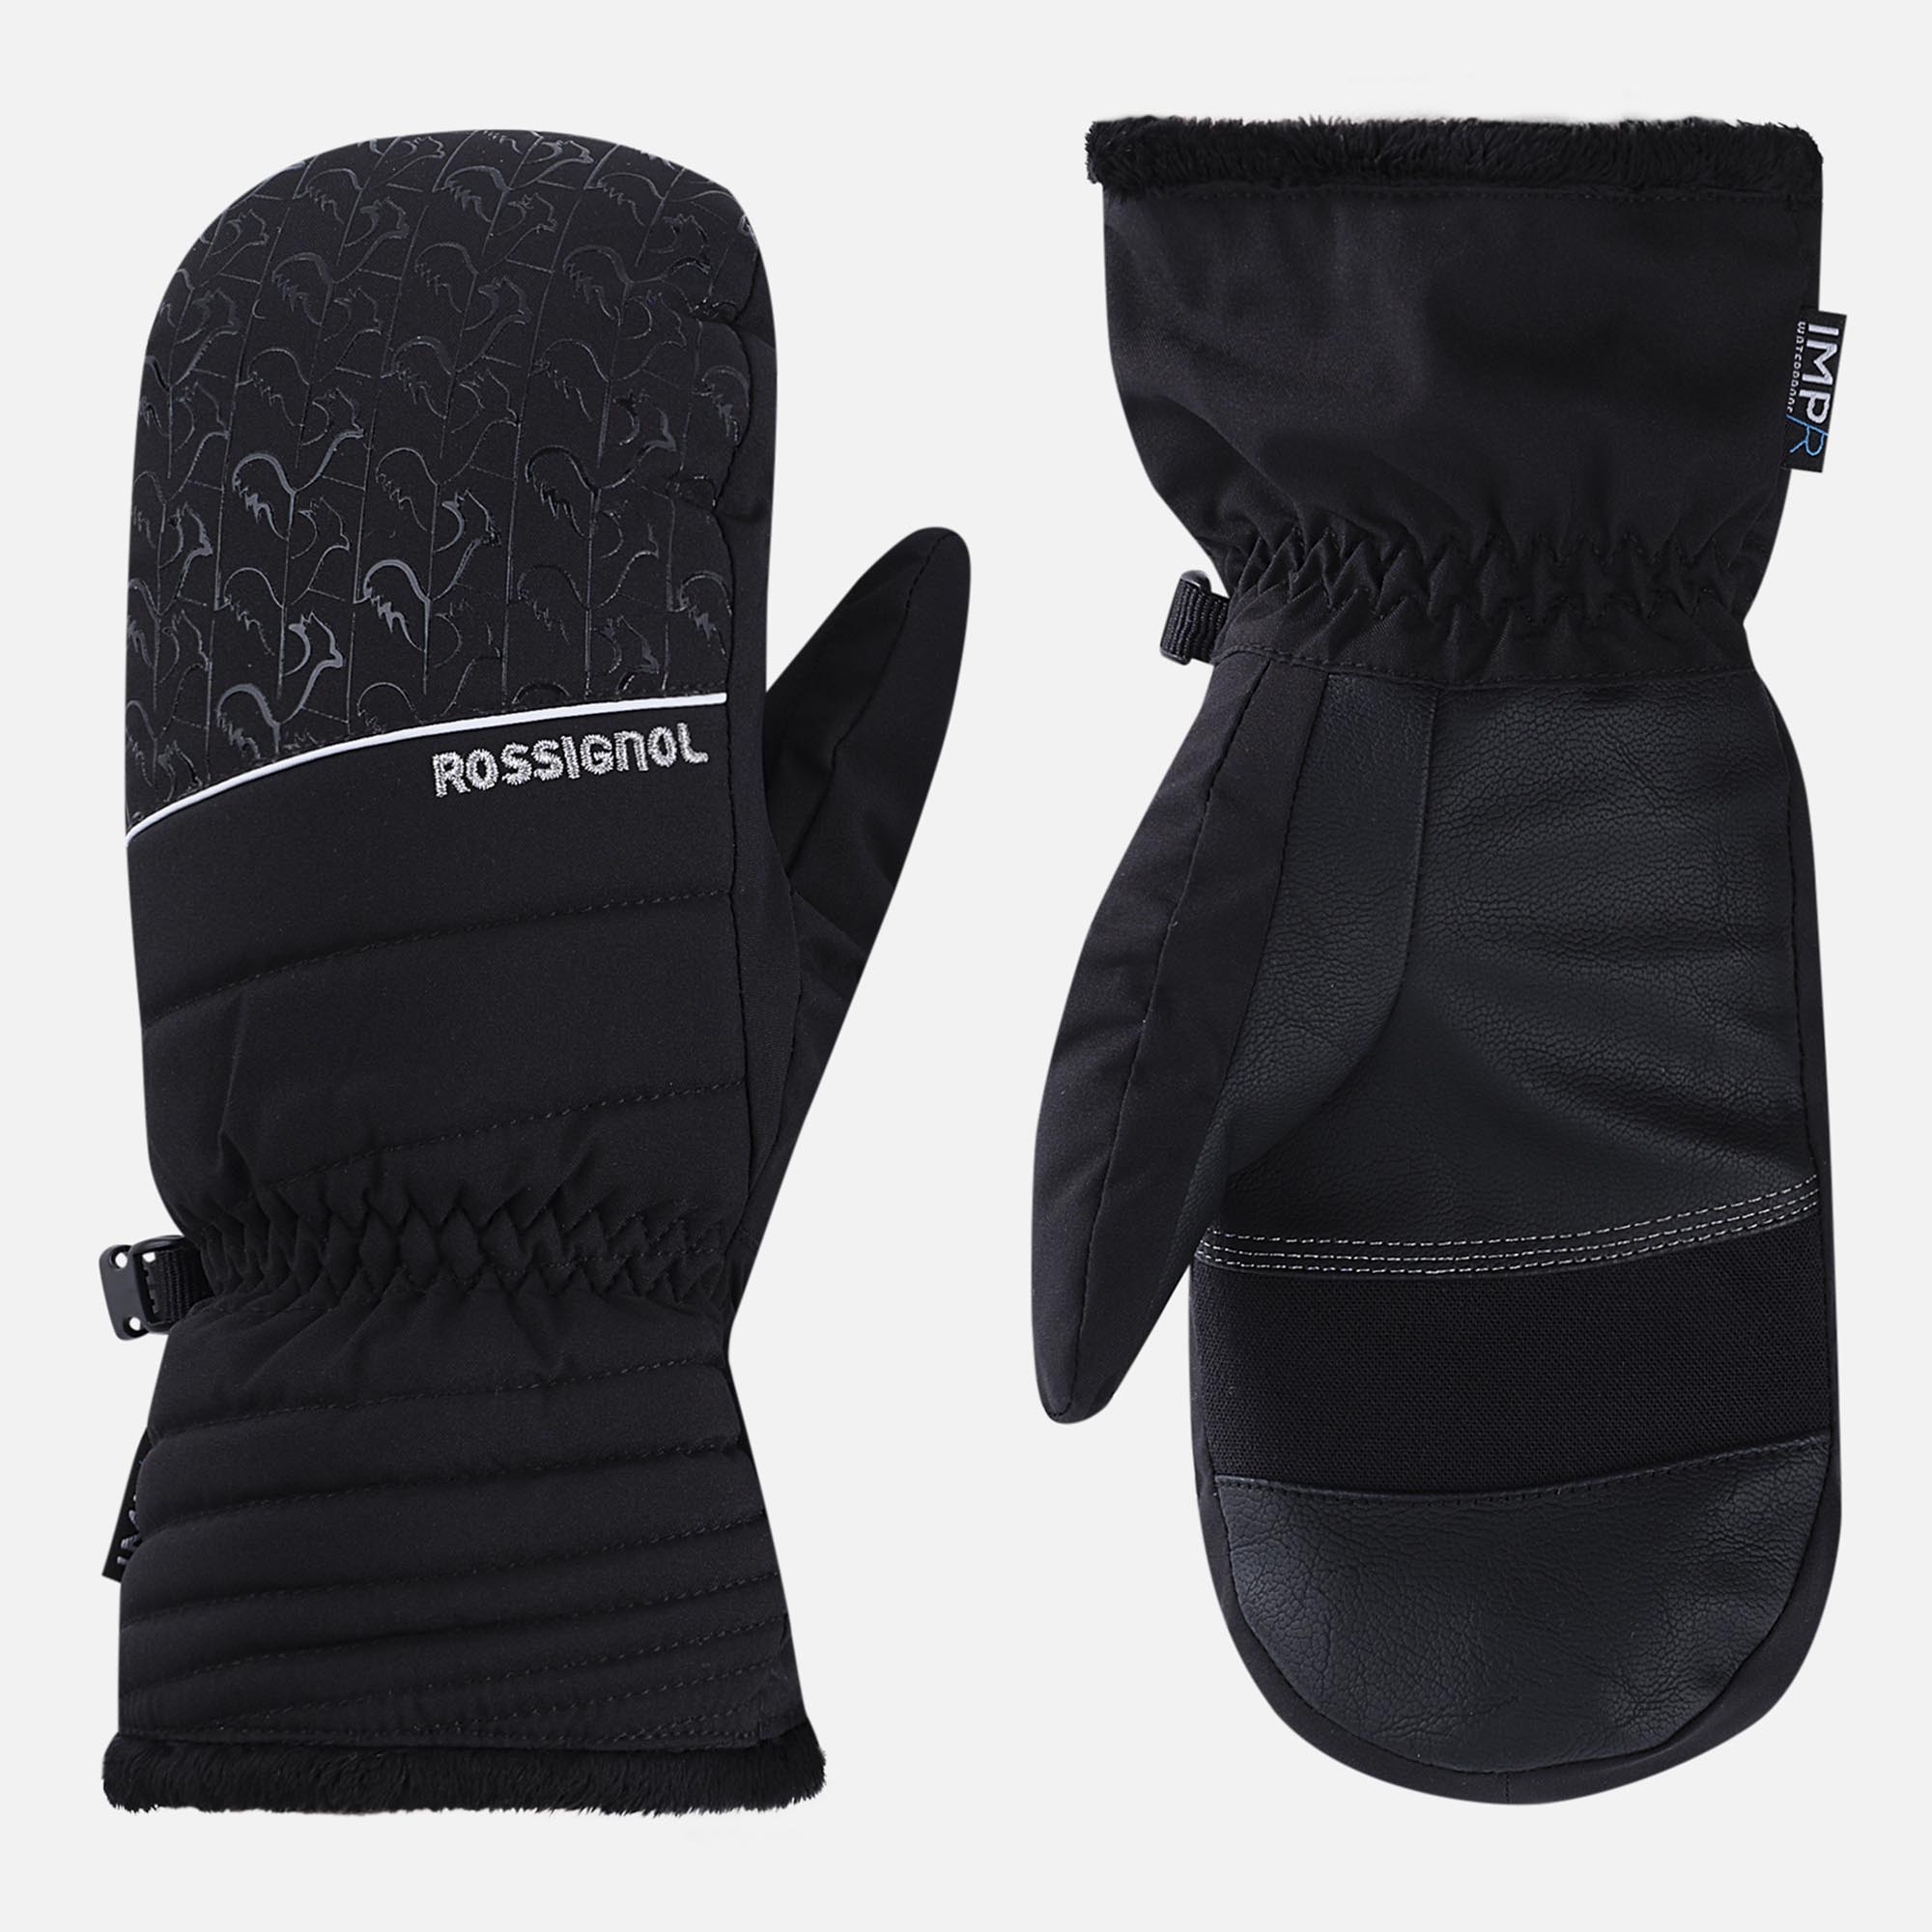 Moufles femme, gants ski femme, gants femme, gants snowboard femme : voir  sur Snowleader